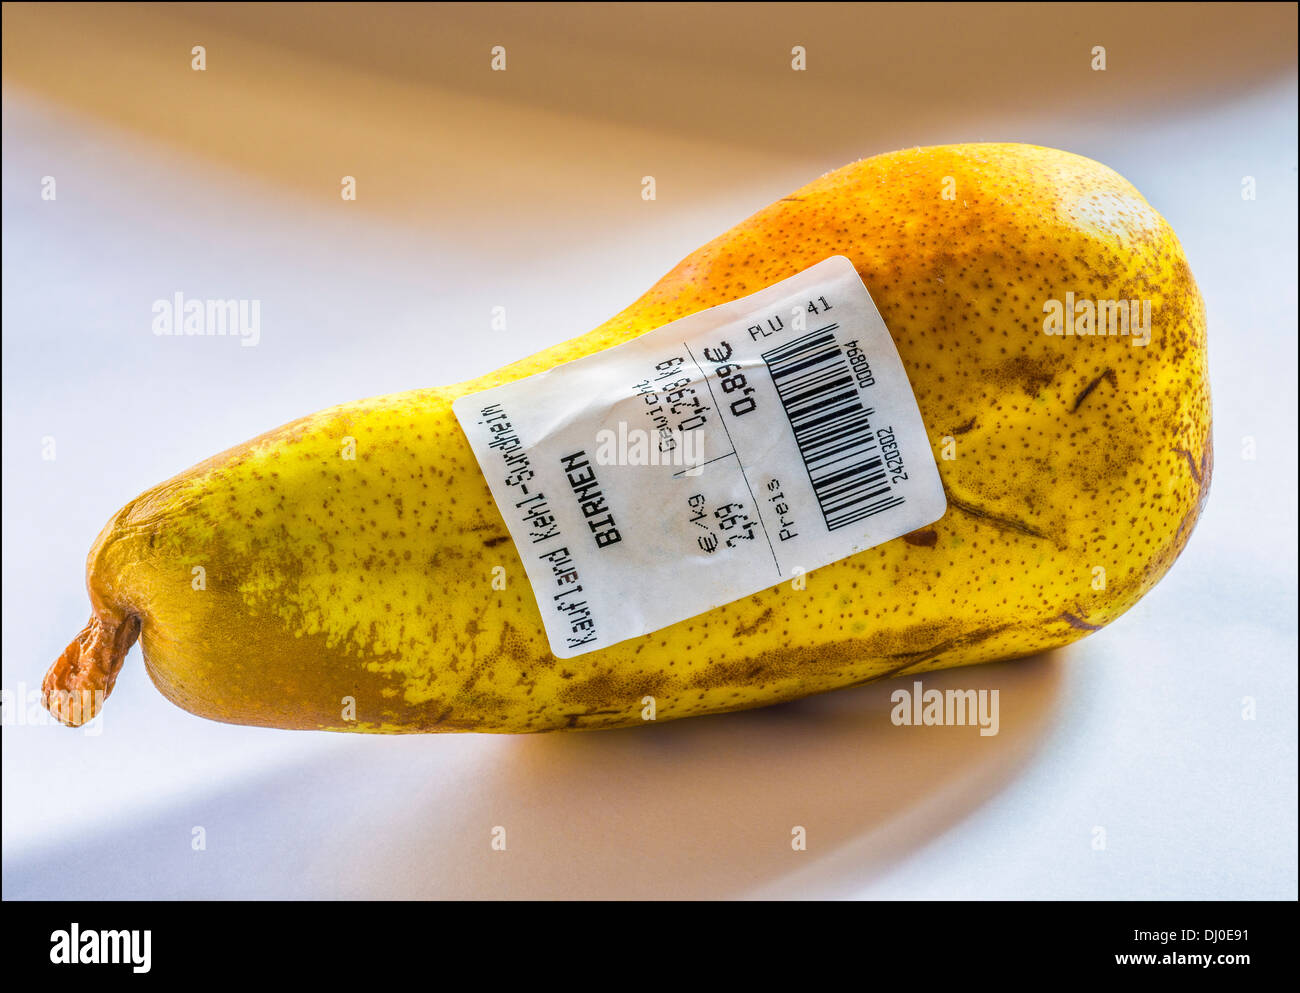 Eine Birne mit deutschen Barcode-Label zeigt Gewicht und Preis in Euro  Stockfotografie - Alamy